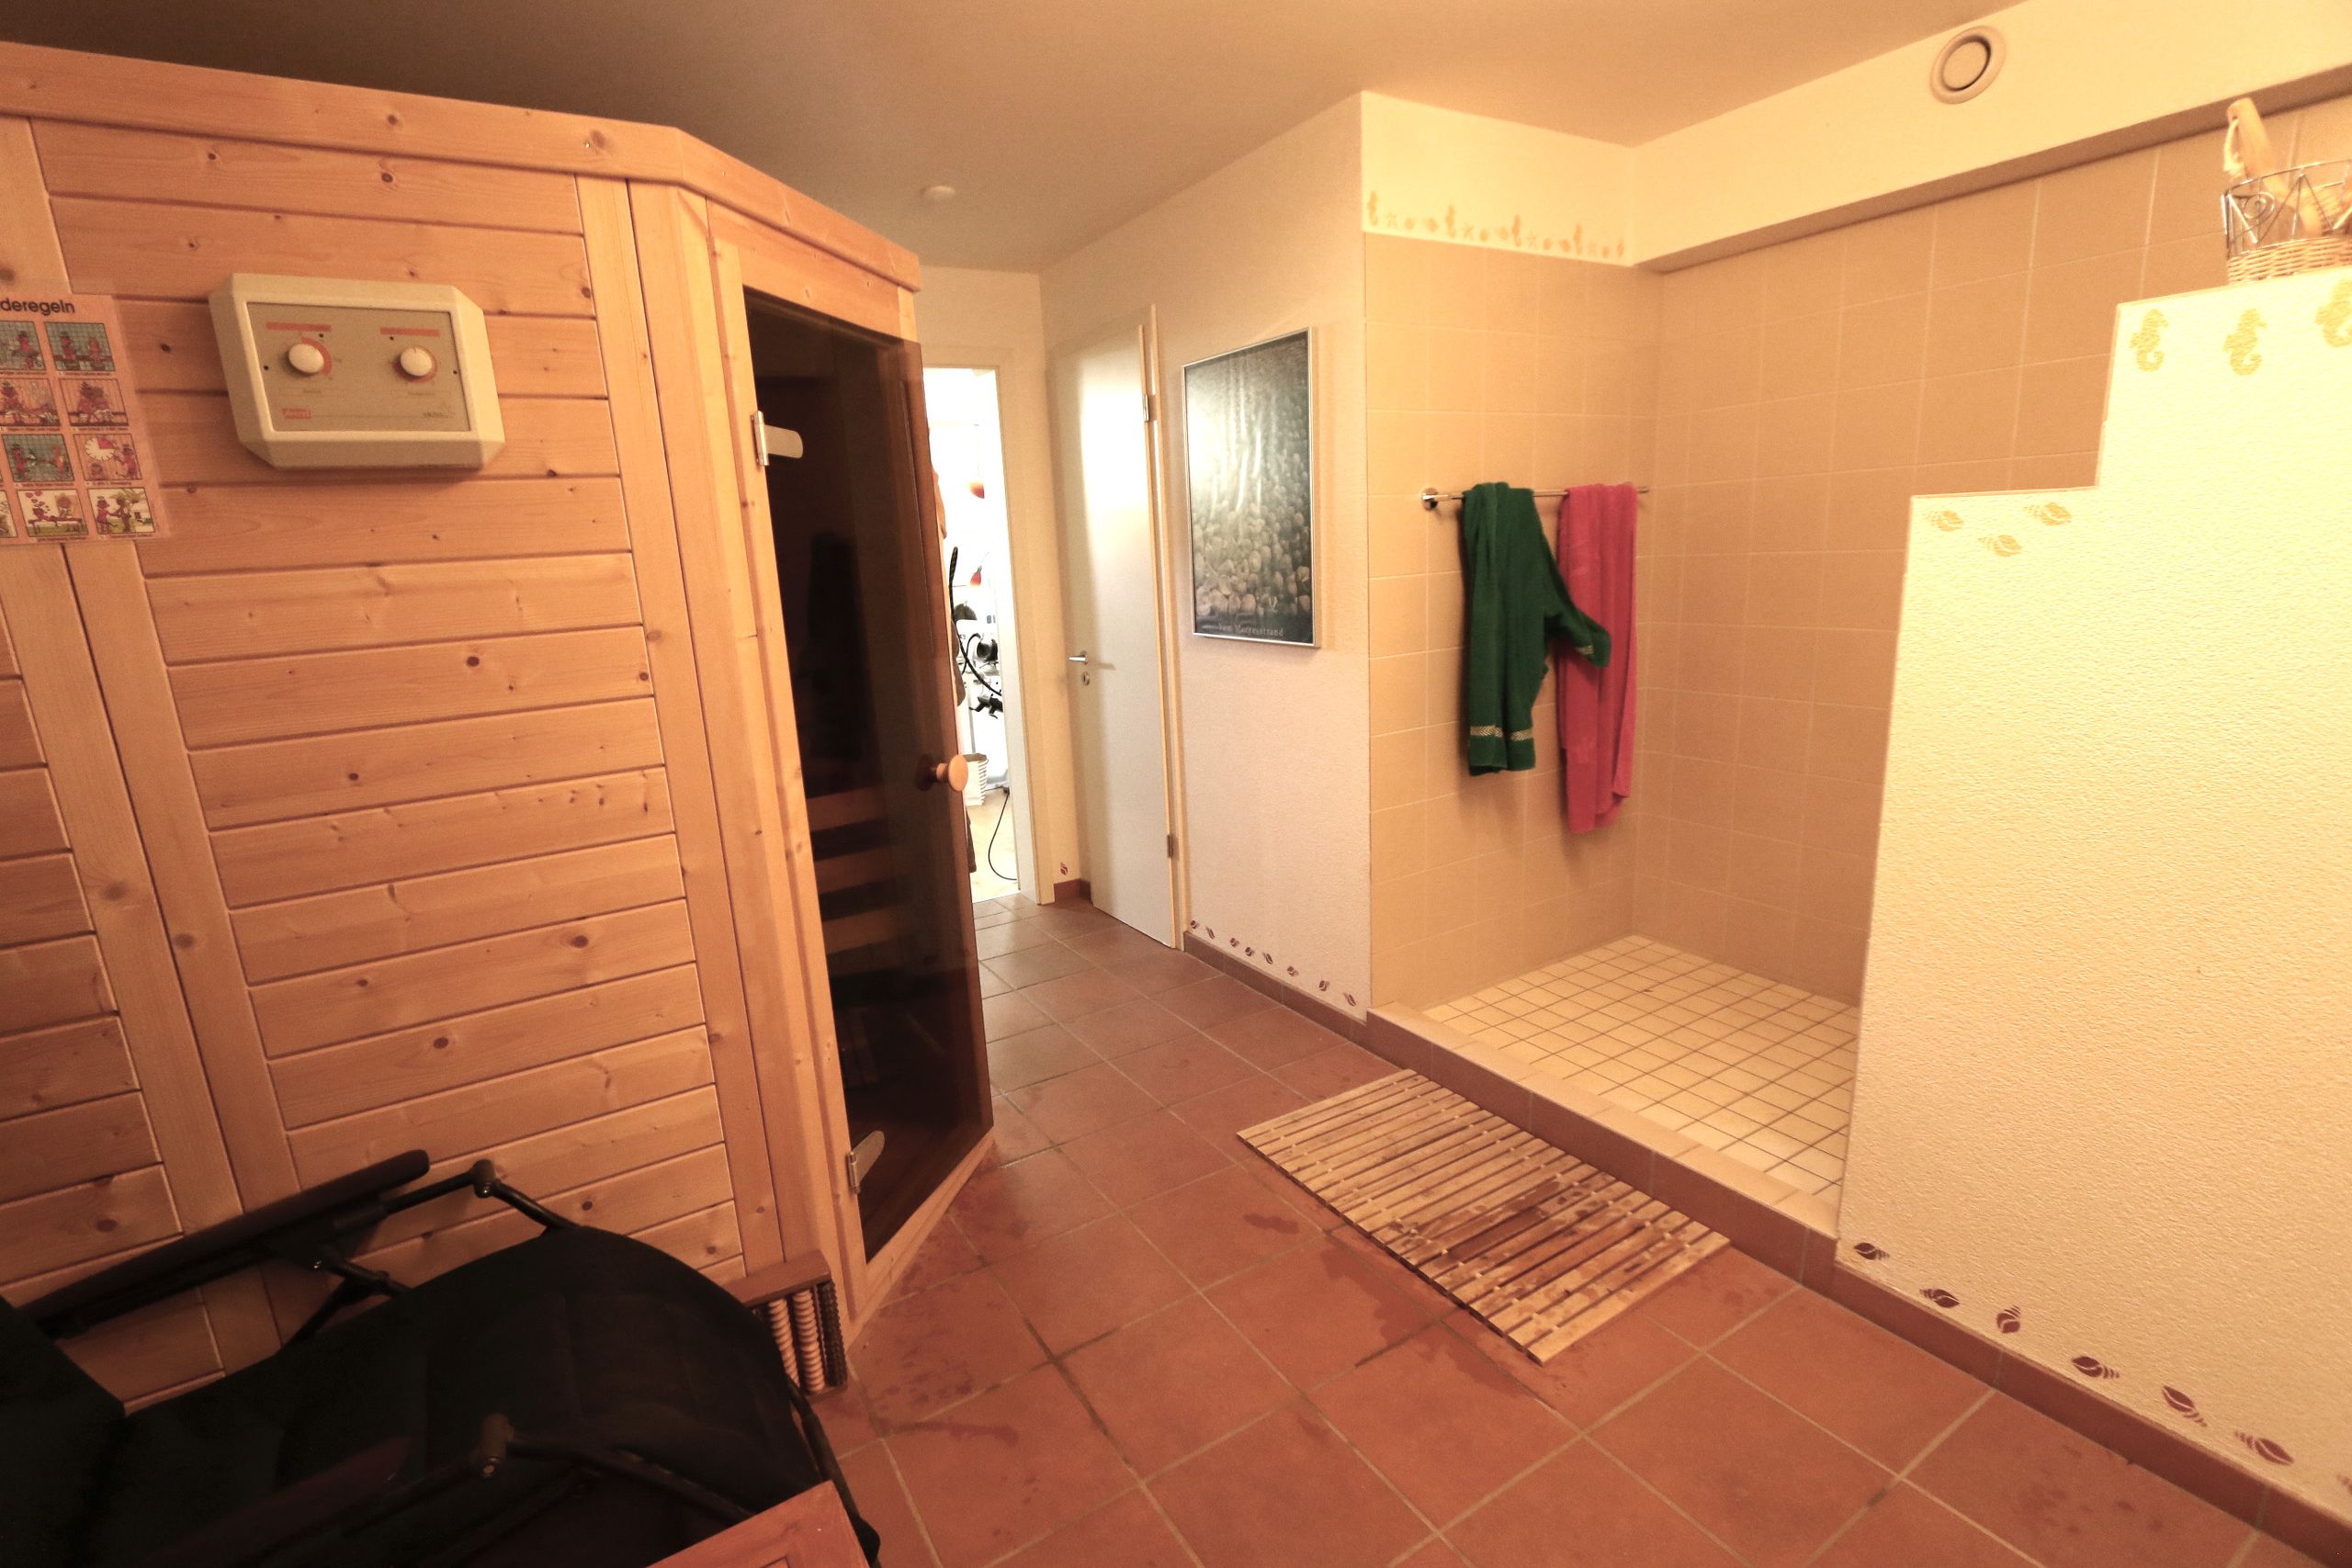 privater Wellnessbereich mit schöner Sauna und grossem Duschbereich, sowie separatem WC